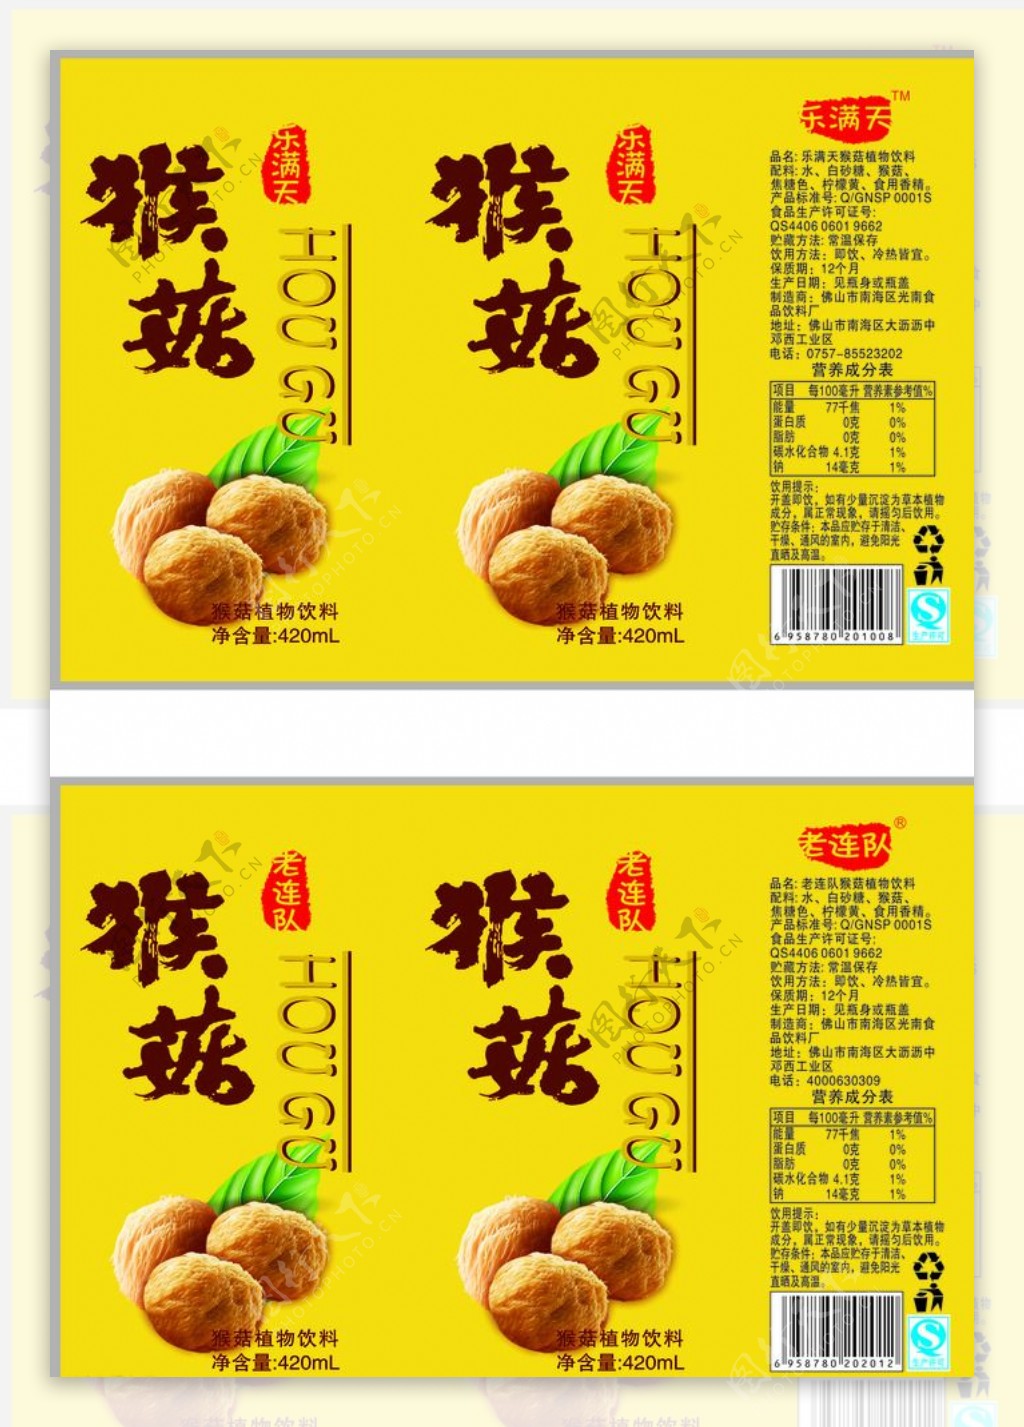 猴菇饮料瓶标图片